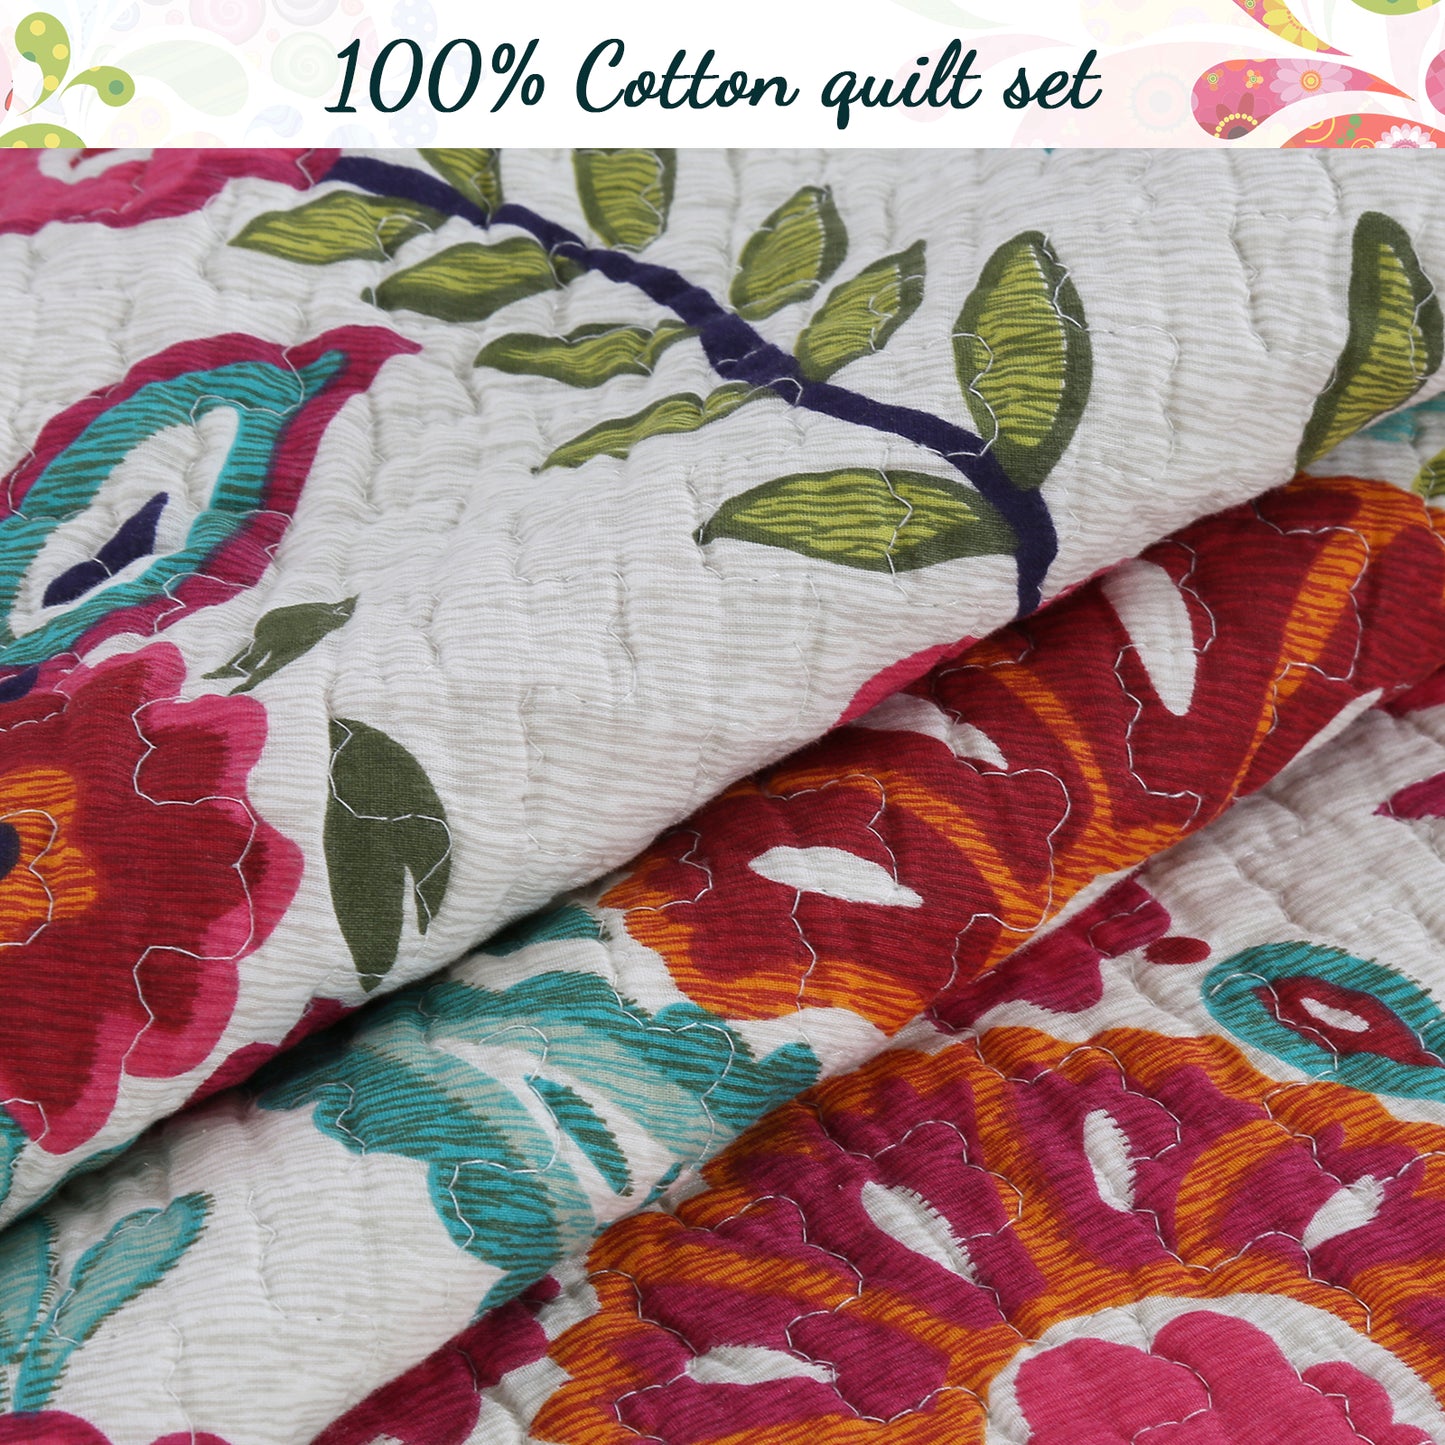 Hitchens Floral Cotton Reversible Quilt Bedding Set